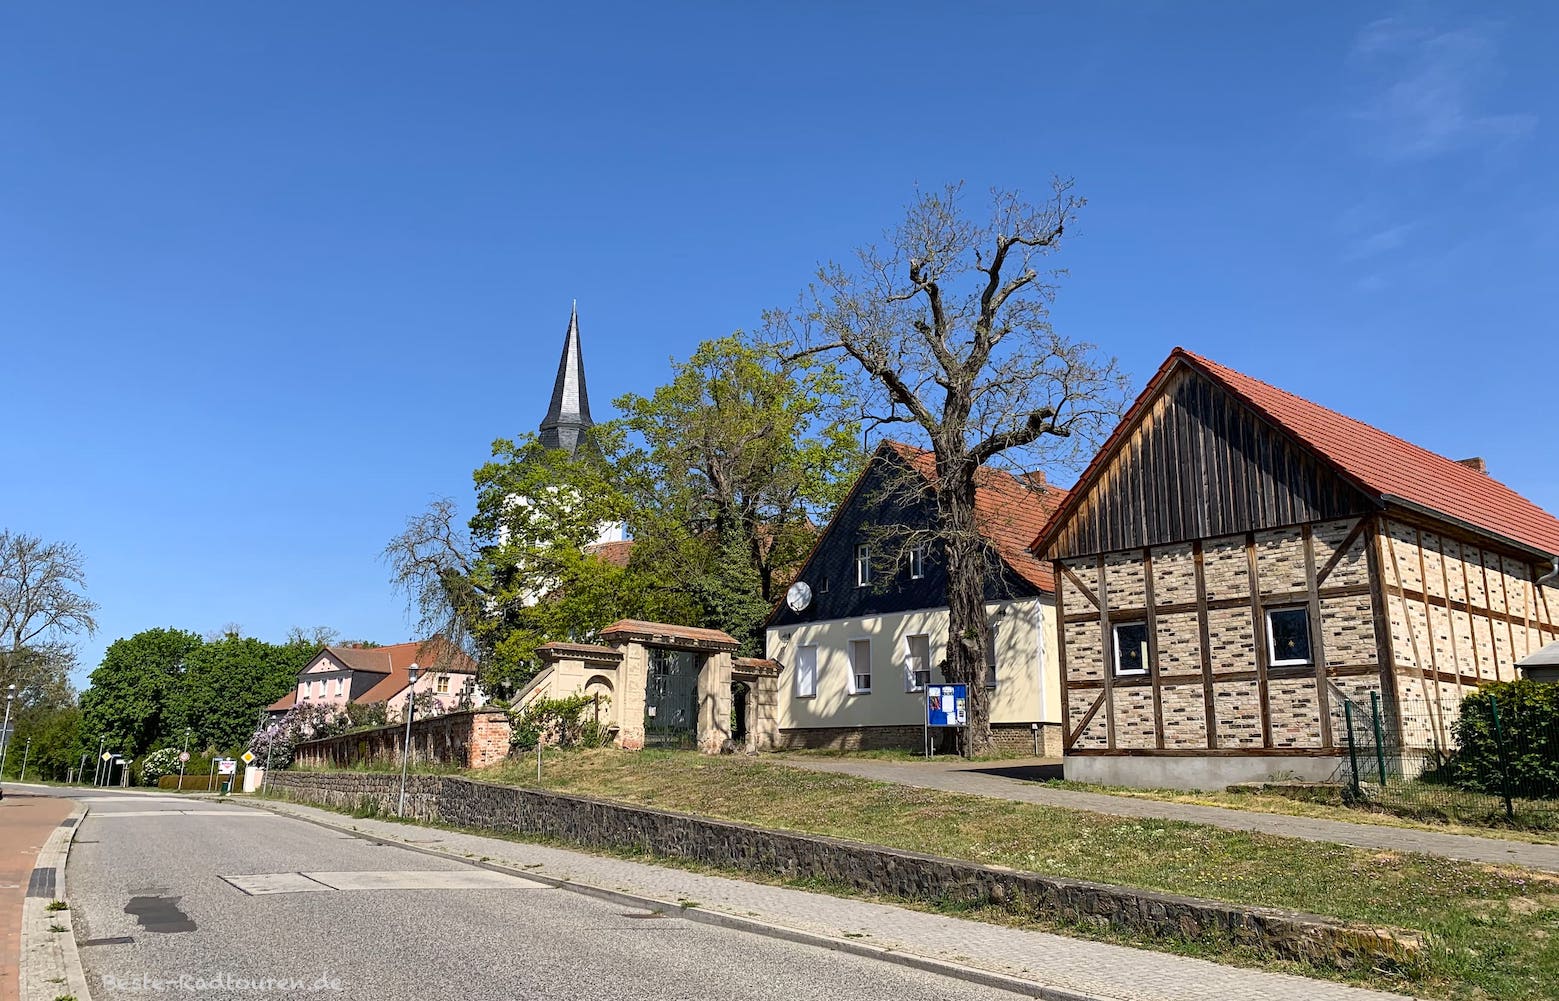 In Dyrotz, Ortsteil von Wustermark, Kirche; Foto vom Radweg aus